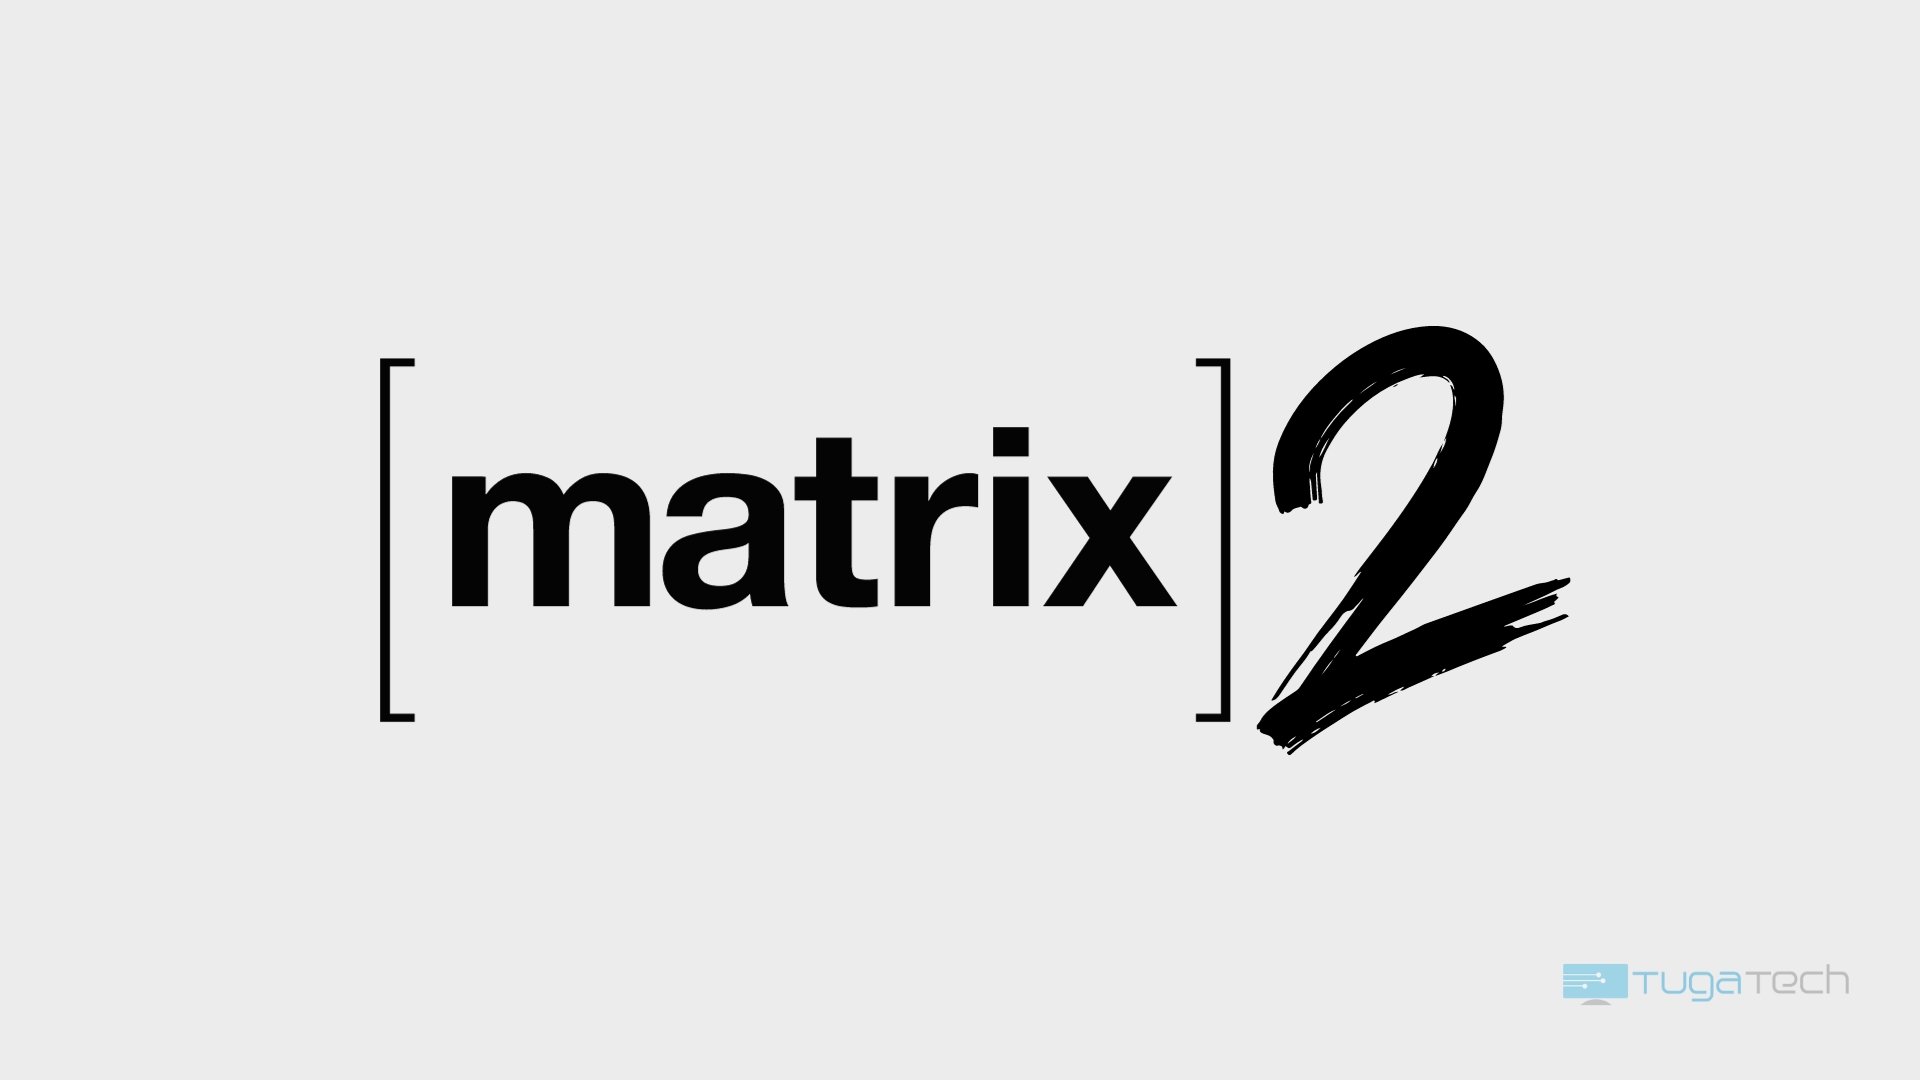 Matrix 2.0